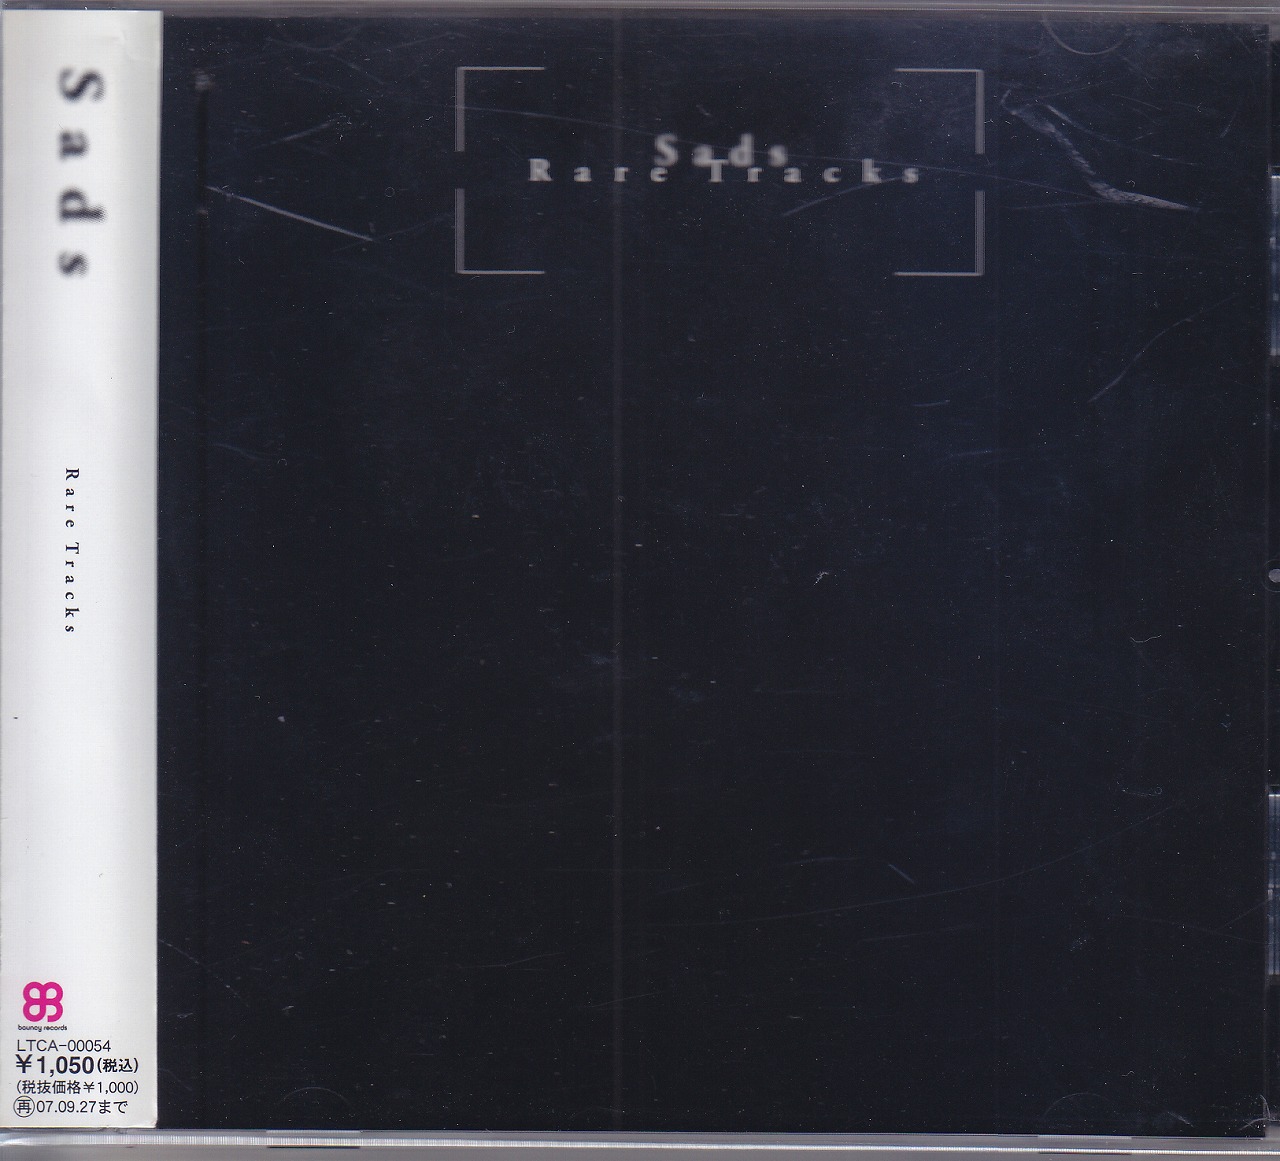 Sads ( サッズ )  の CD Rare Tracks